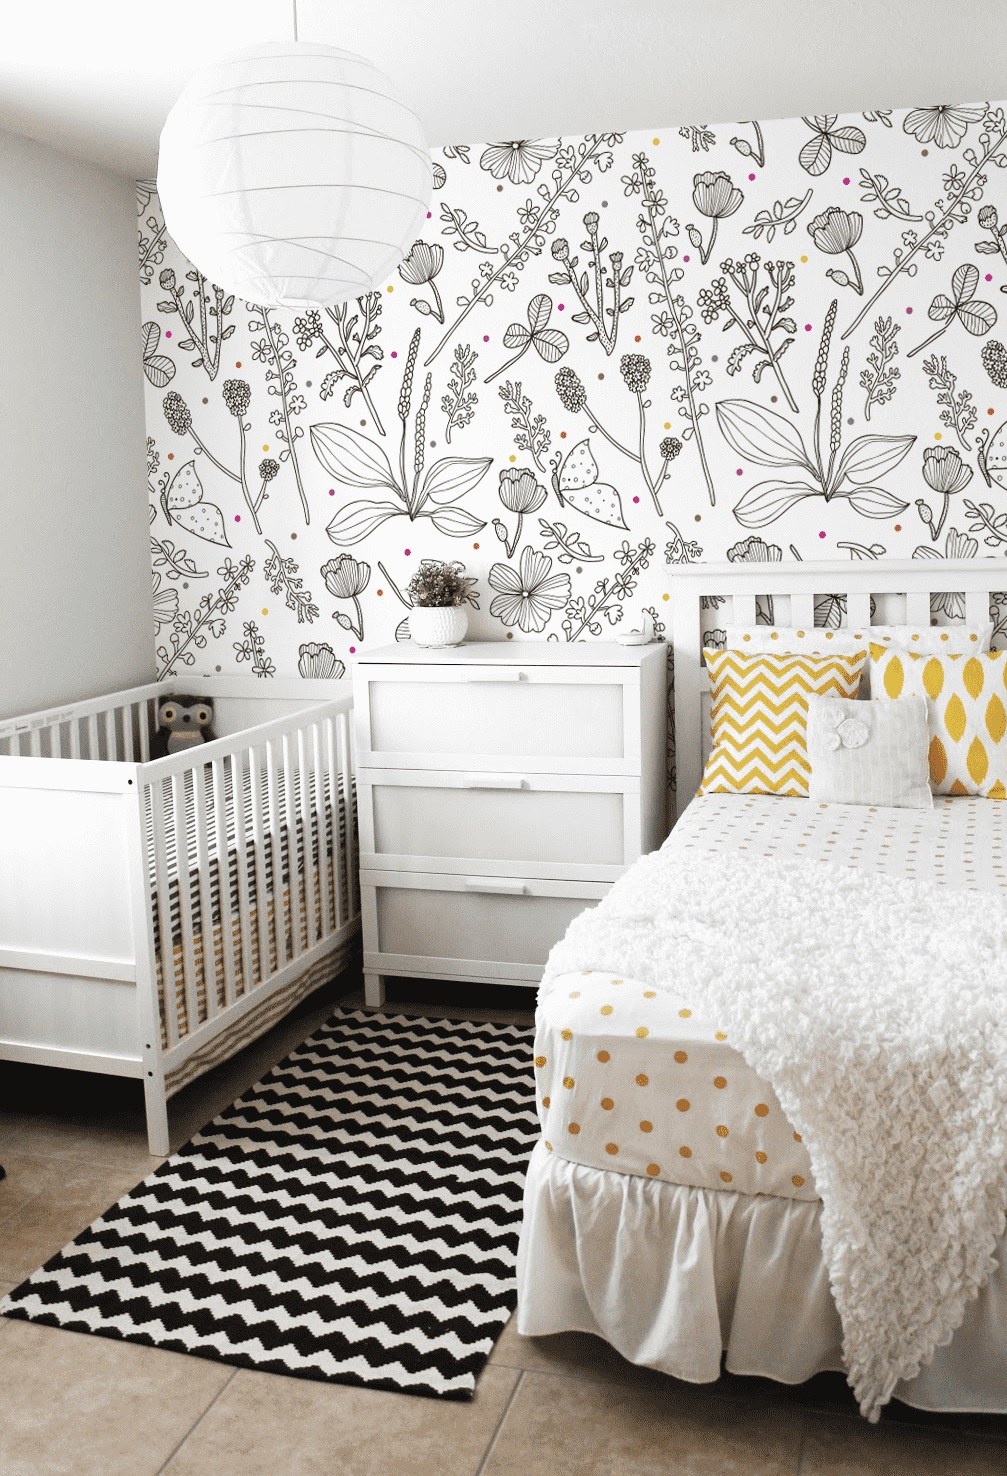 Дизайн спальни с детской кроваткой +50 фото идей обустройства комнаты